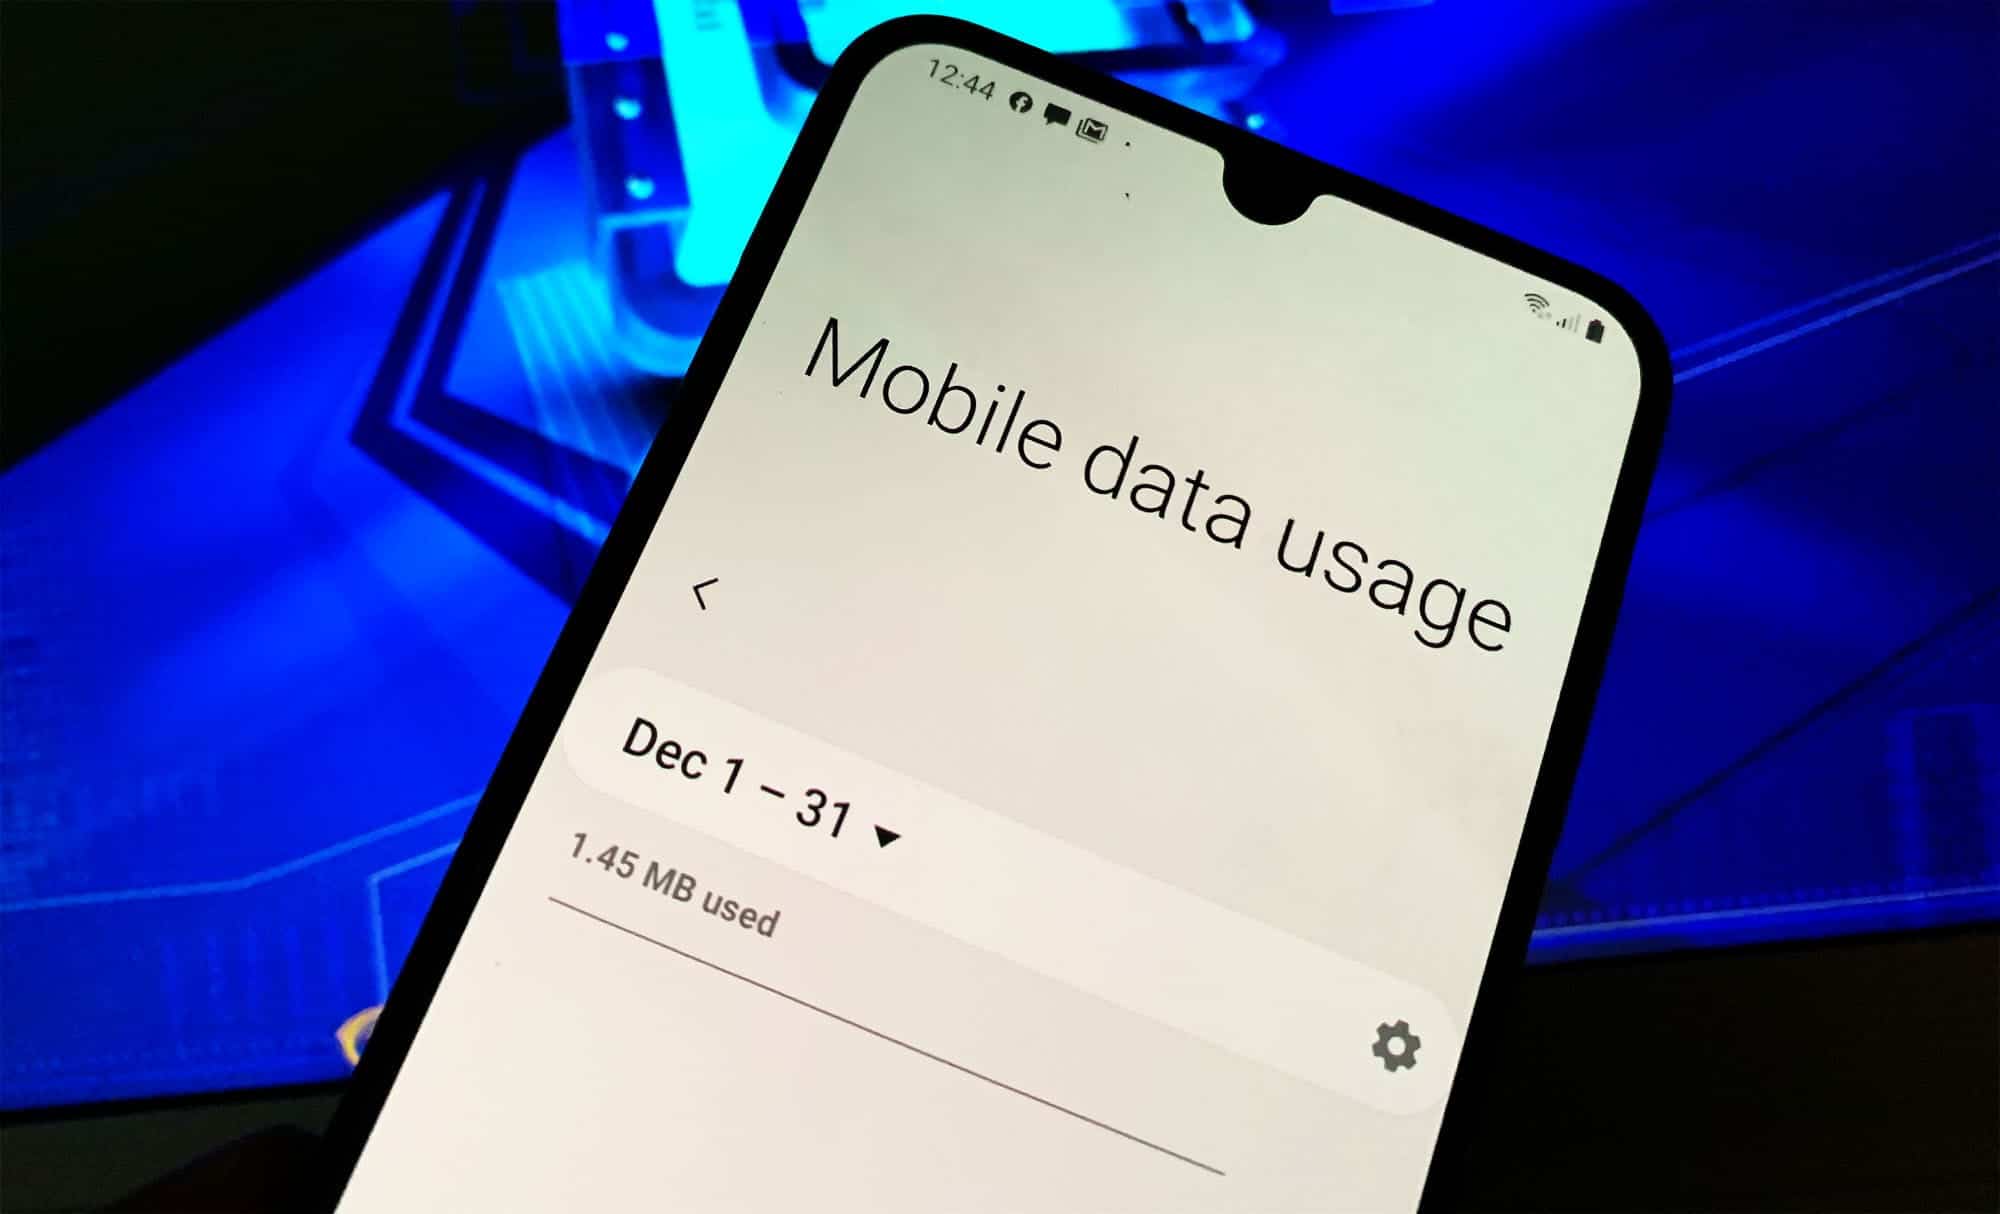 Chán ngán với việc phải lo lắng về giới hạn dữ liệu nền trên điện thoại Samsung? Nếu có, hãy xem ngay hình ảnh liên quan và khám phá những giải pháp tuyệt vời để giữ cho dữ liệu luôn trong tầm kiểm soát của bạn.